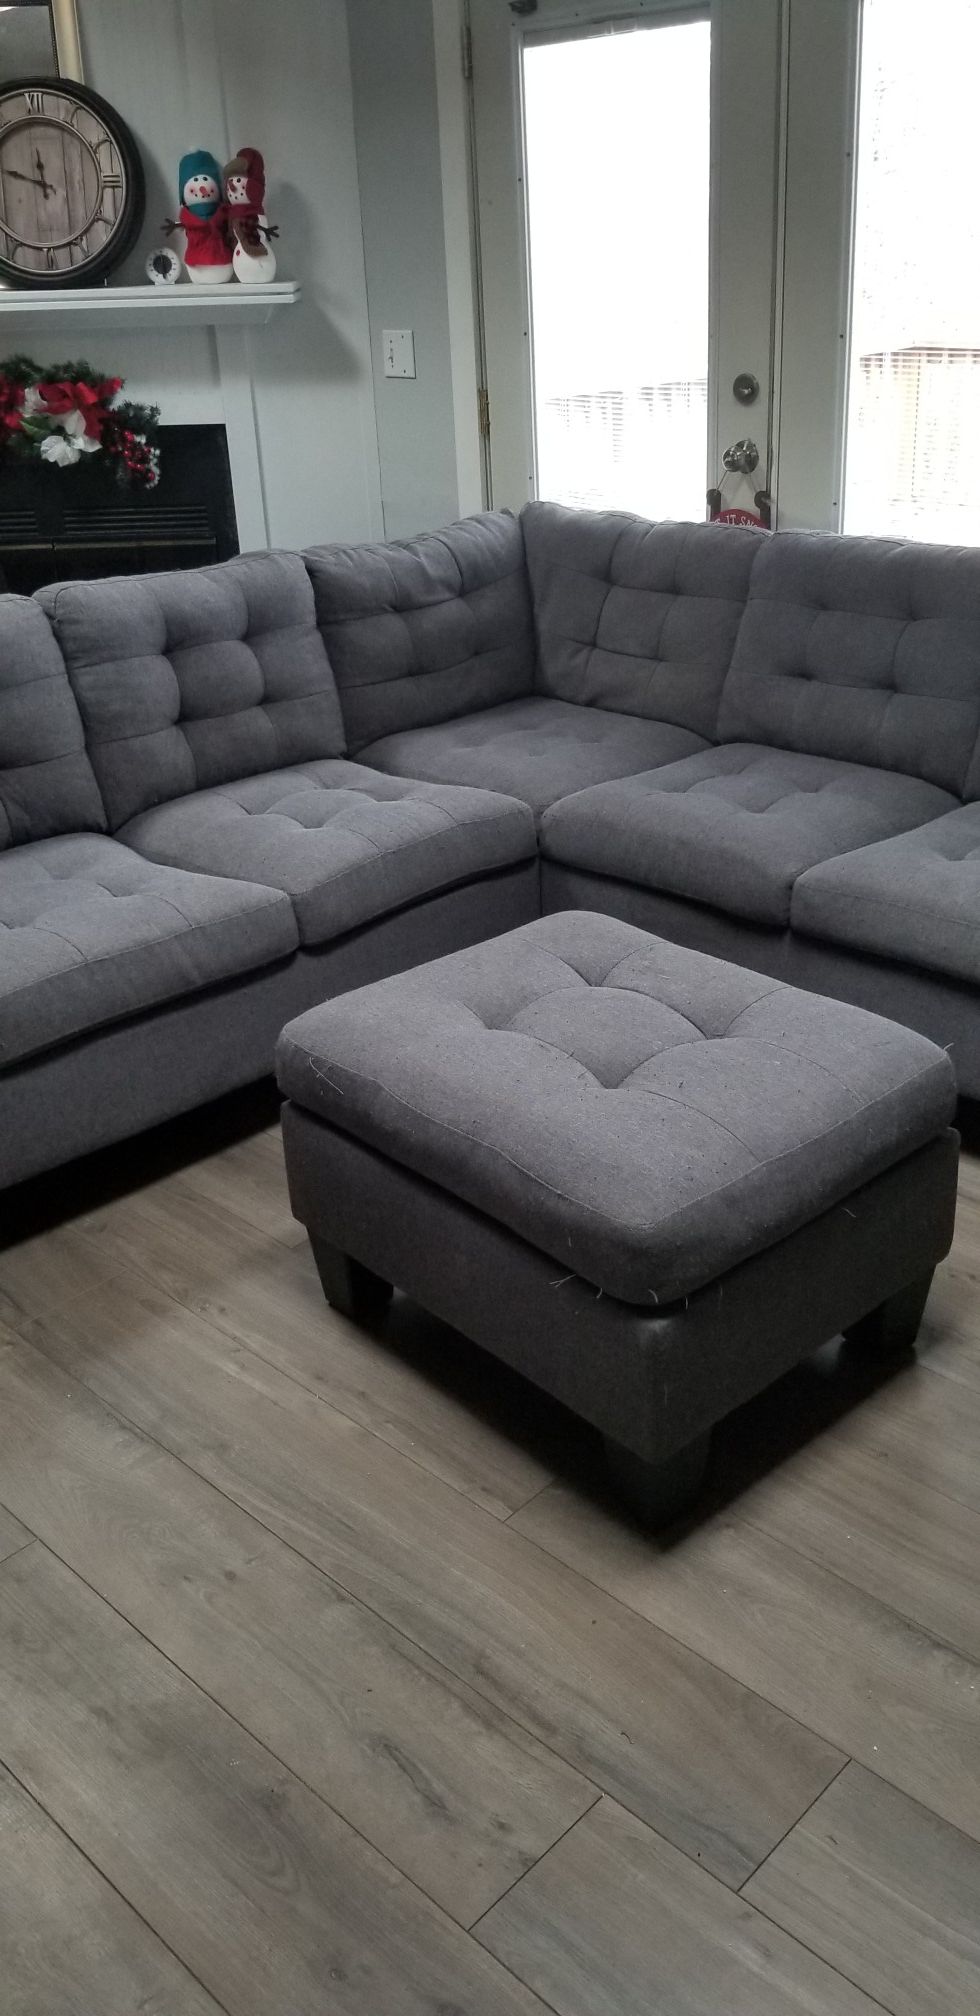 Sectional sofa and ottoman